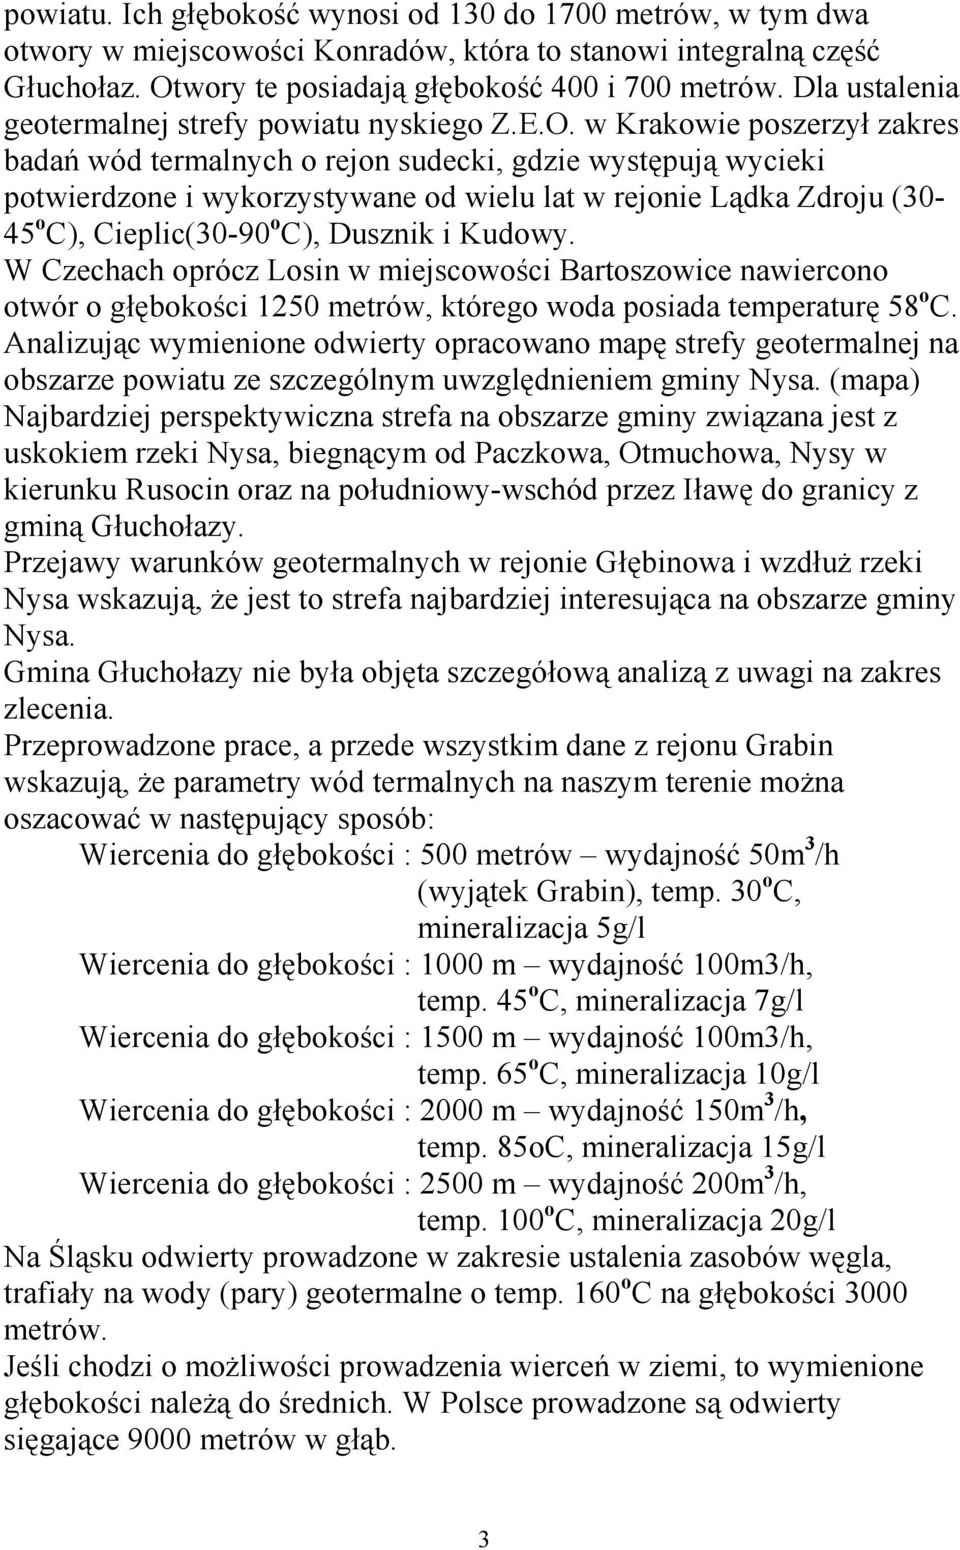 w Krakowie poszerzył zakres badań wód termalnych o rejon sudecki, gdzie występują wycieki potwierdzone i wykorzystywane od wielu lat w rejonie Lądka Zdroju (30-45 o C), Cieplic(30-90 o C), Dusznik i